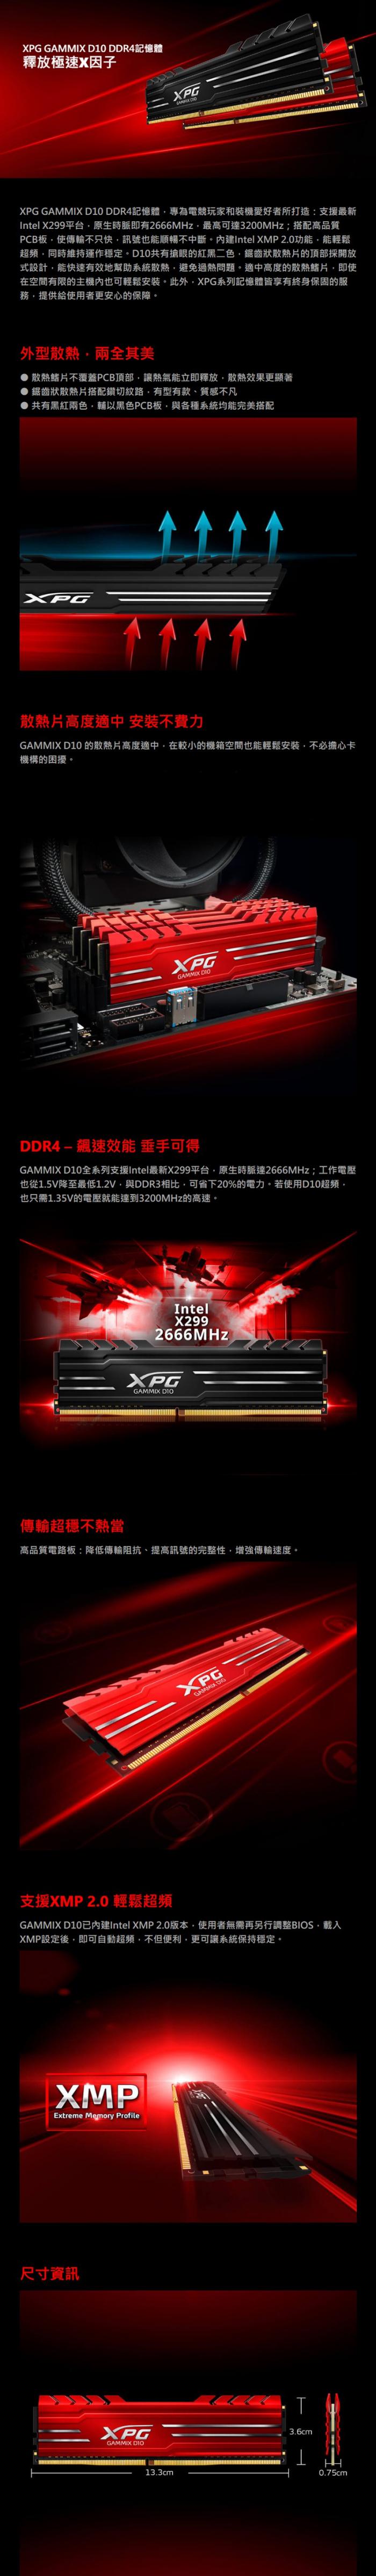 威剛 XPG D10 16G DDR4 3200 黑色